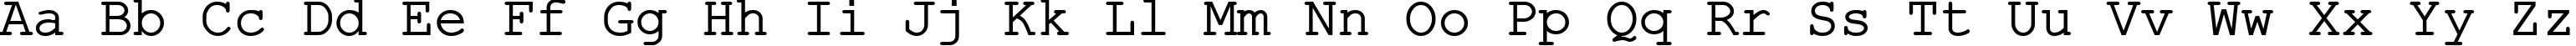 Пример написания английского алфавита шрифтом ER Kurier 1251